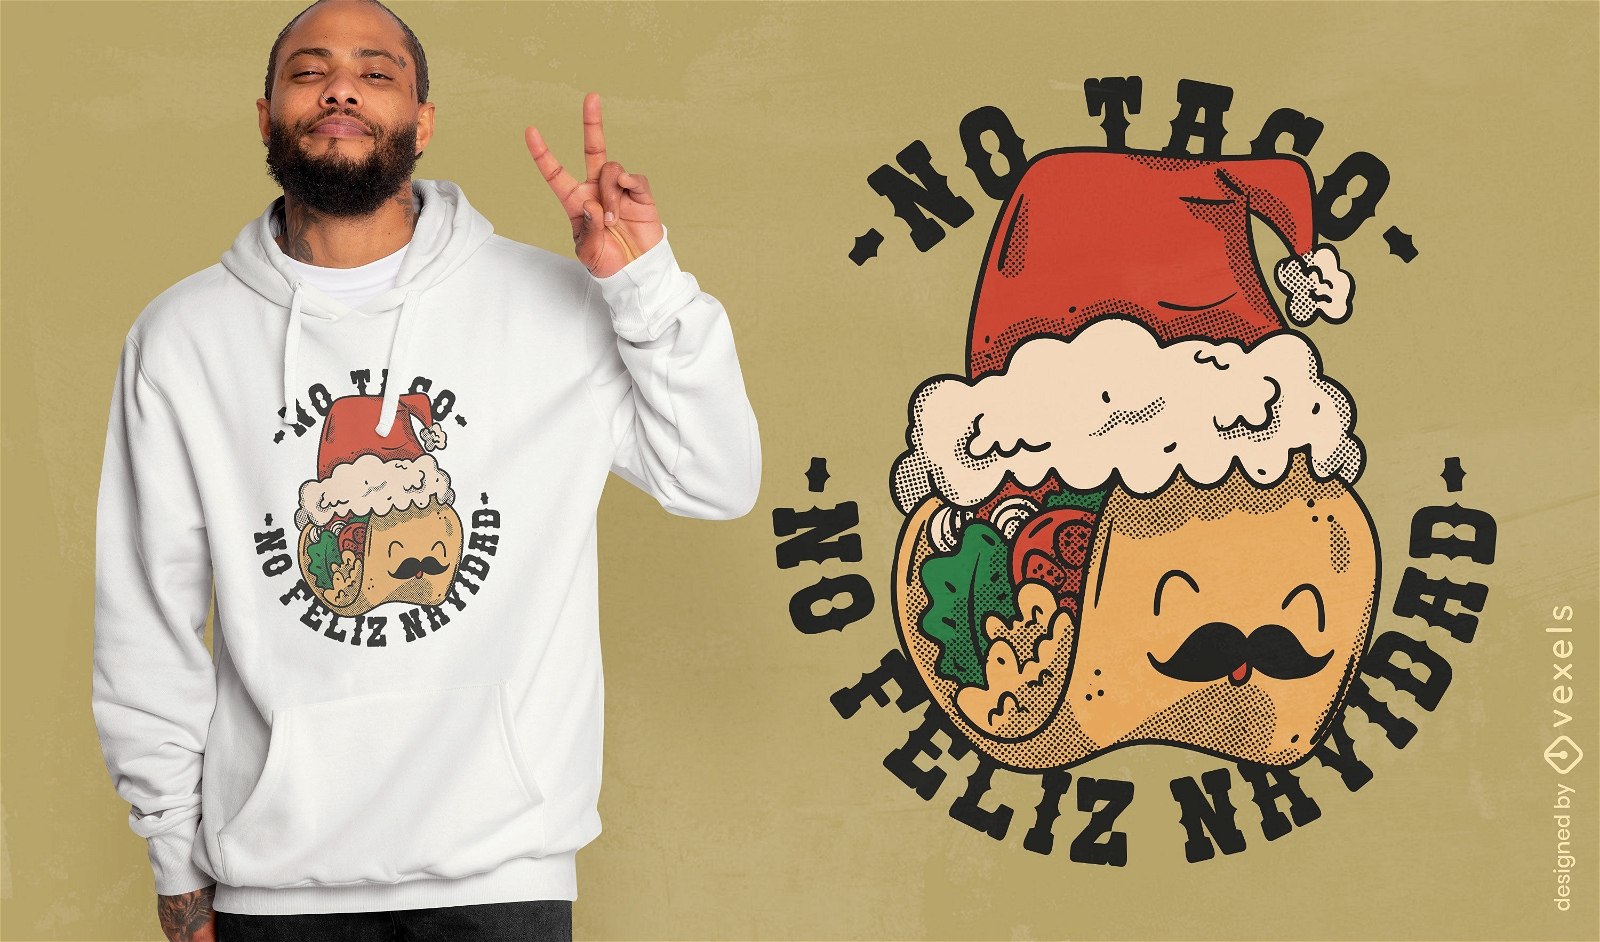 Christmas holiday taco food t-shirt design